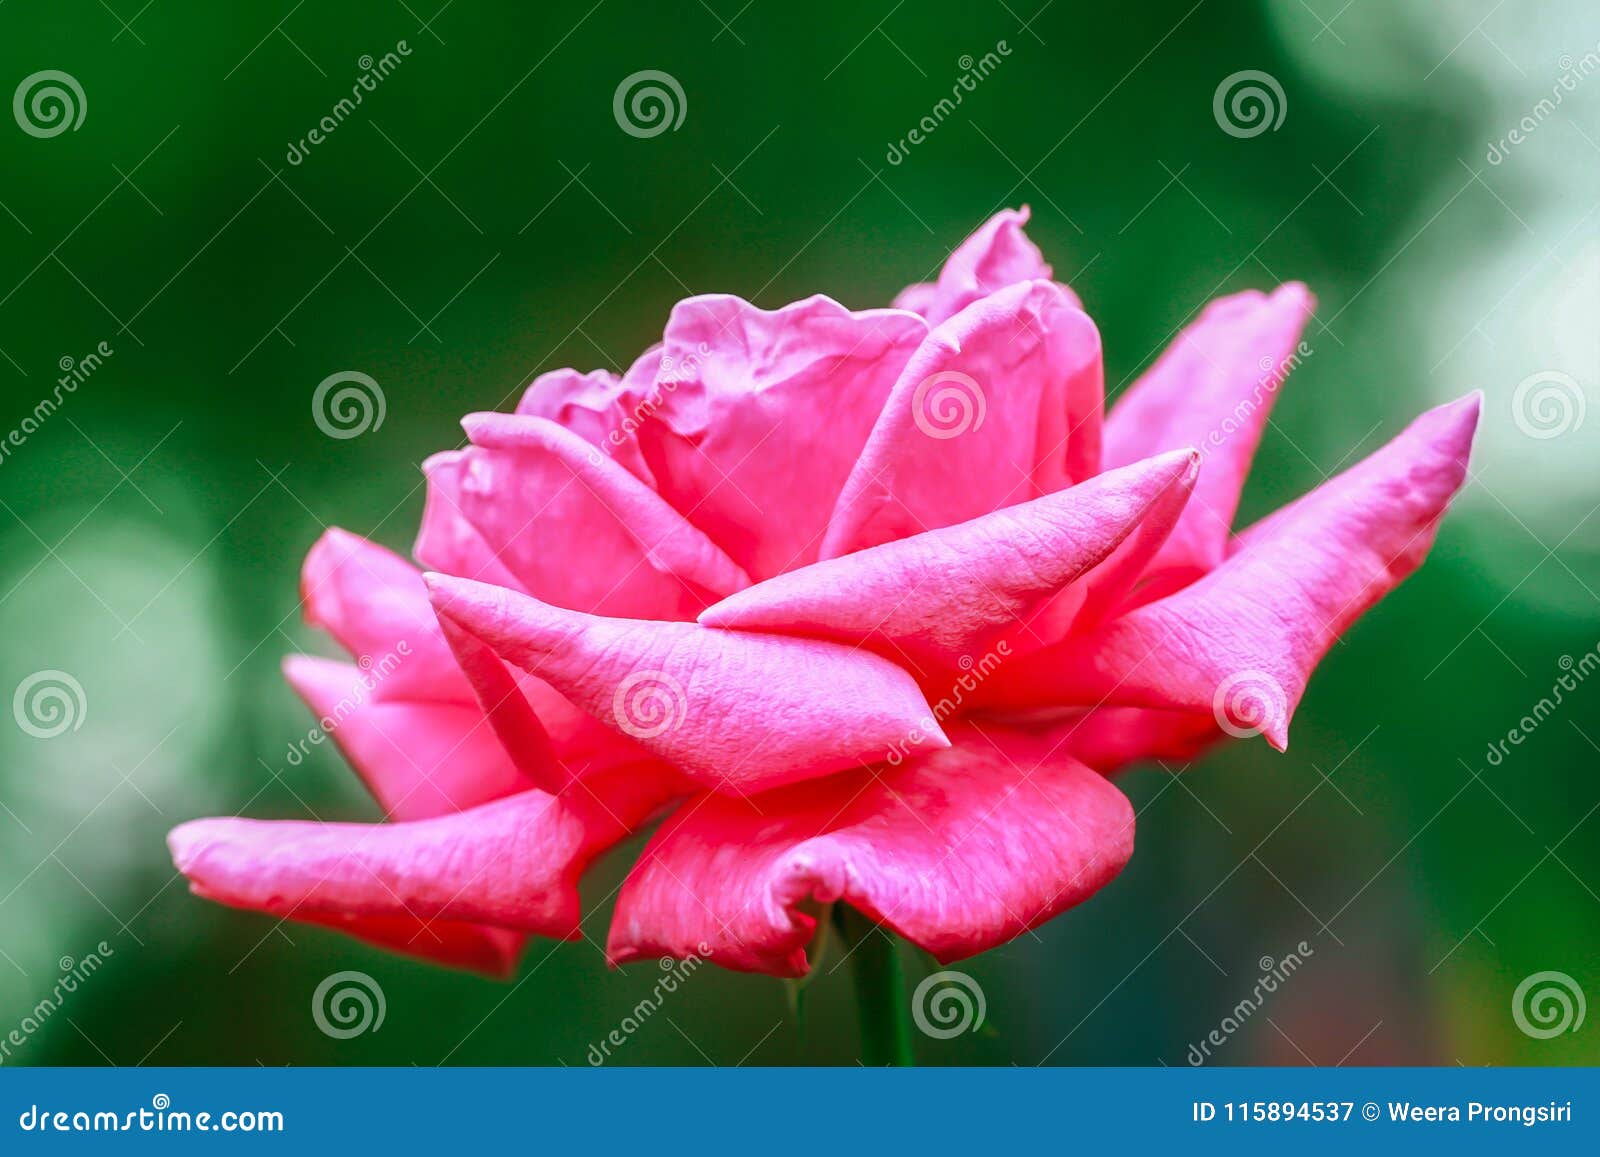 rose - flower, bouquet, flower, flower head, petal